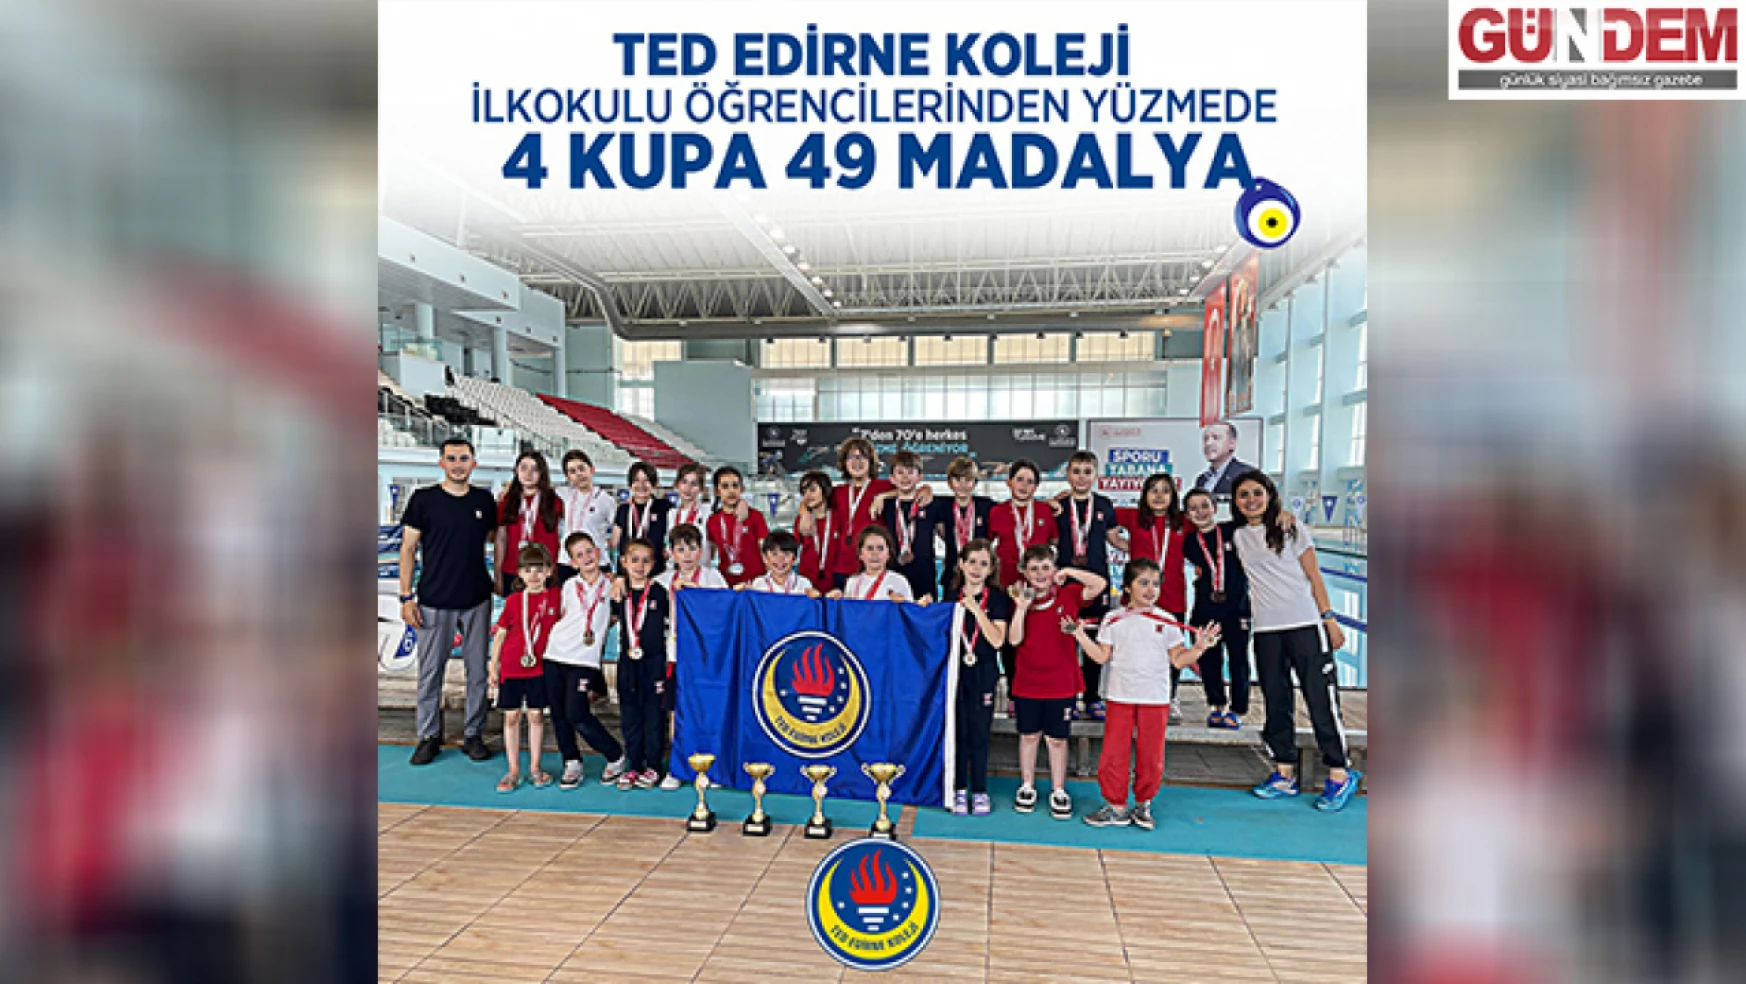 TED Edirne Koleji öğrencileri turnuvada 4 kupanın sahibi oldu